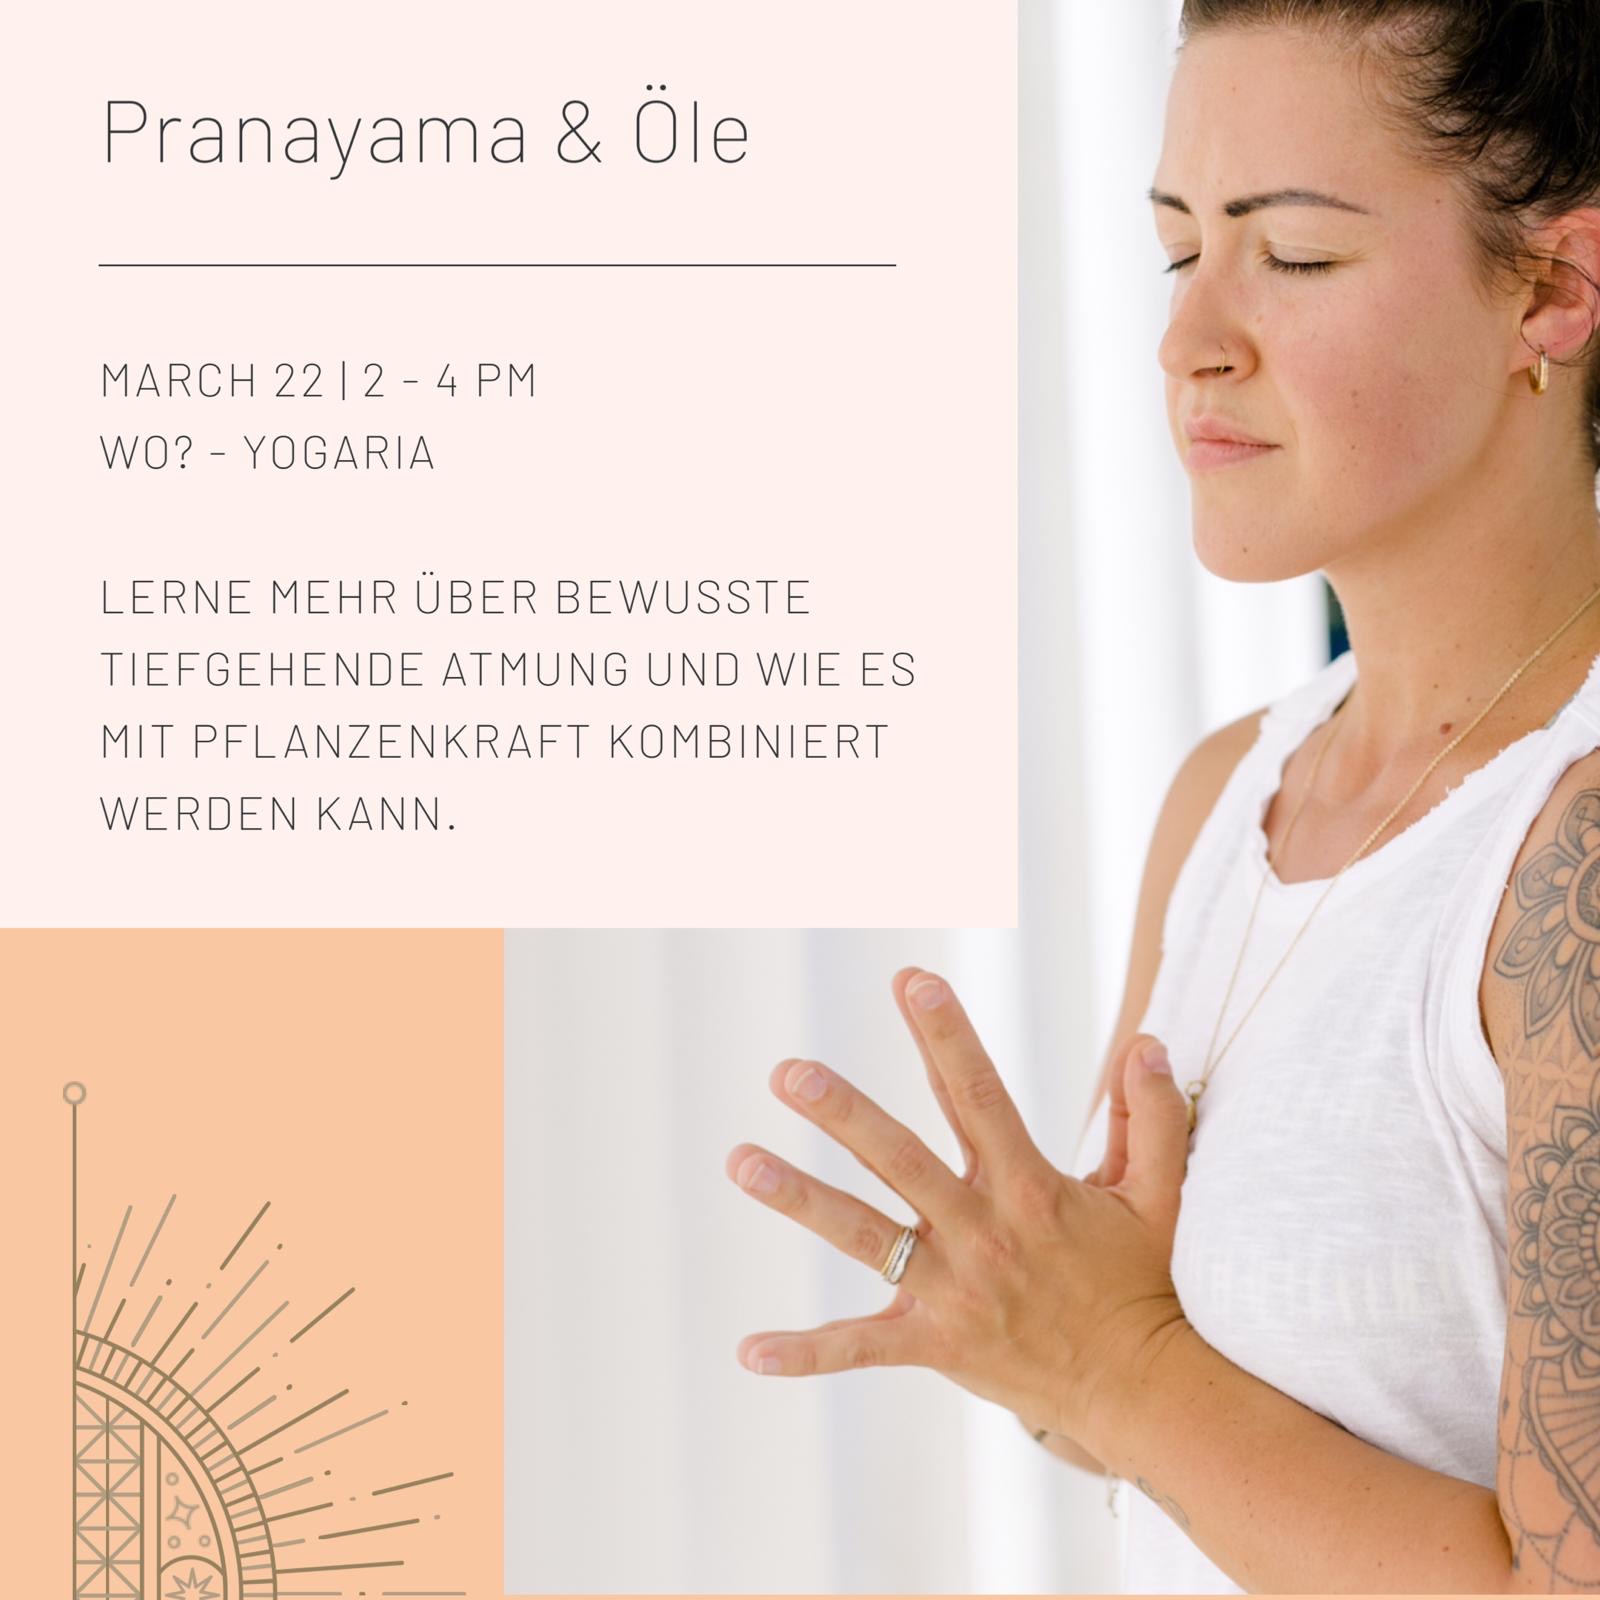 Tatjana rechts im Bild von der Seite mit den Händen in Namaskar, der Gebetshaltung, geschlossene Augen, meditativ, links oben eine Infobox mit den Details zum Workshop